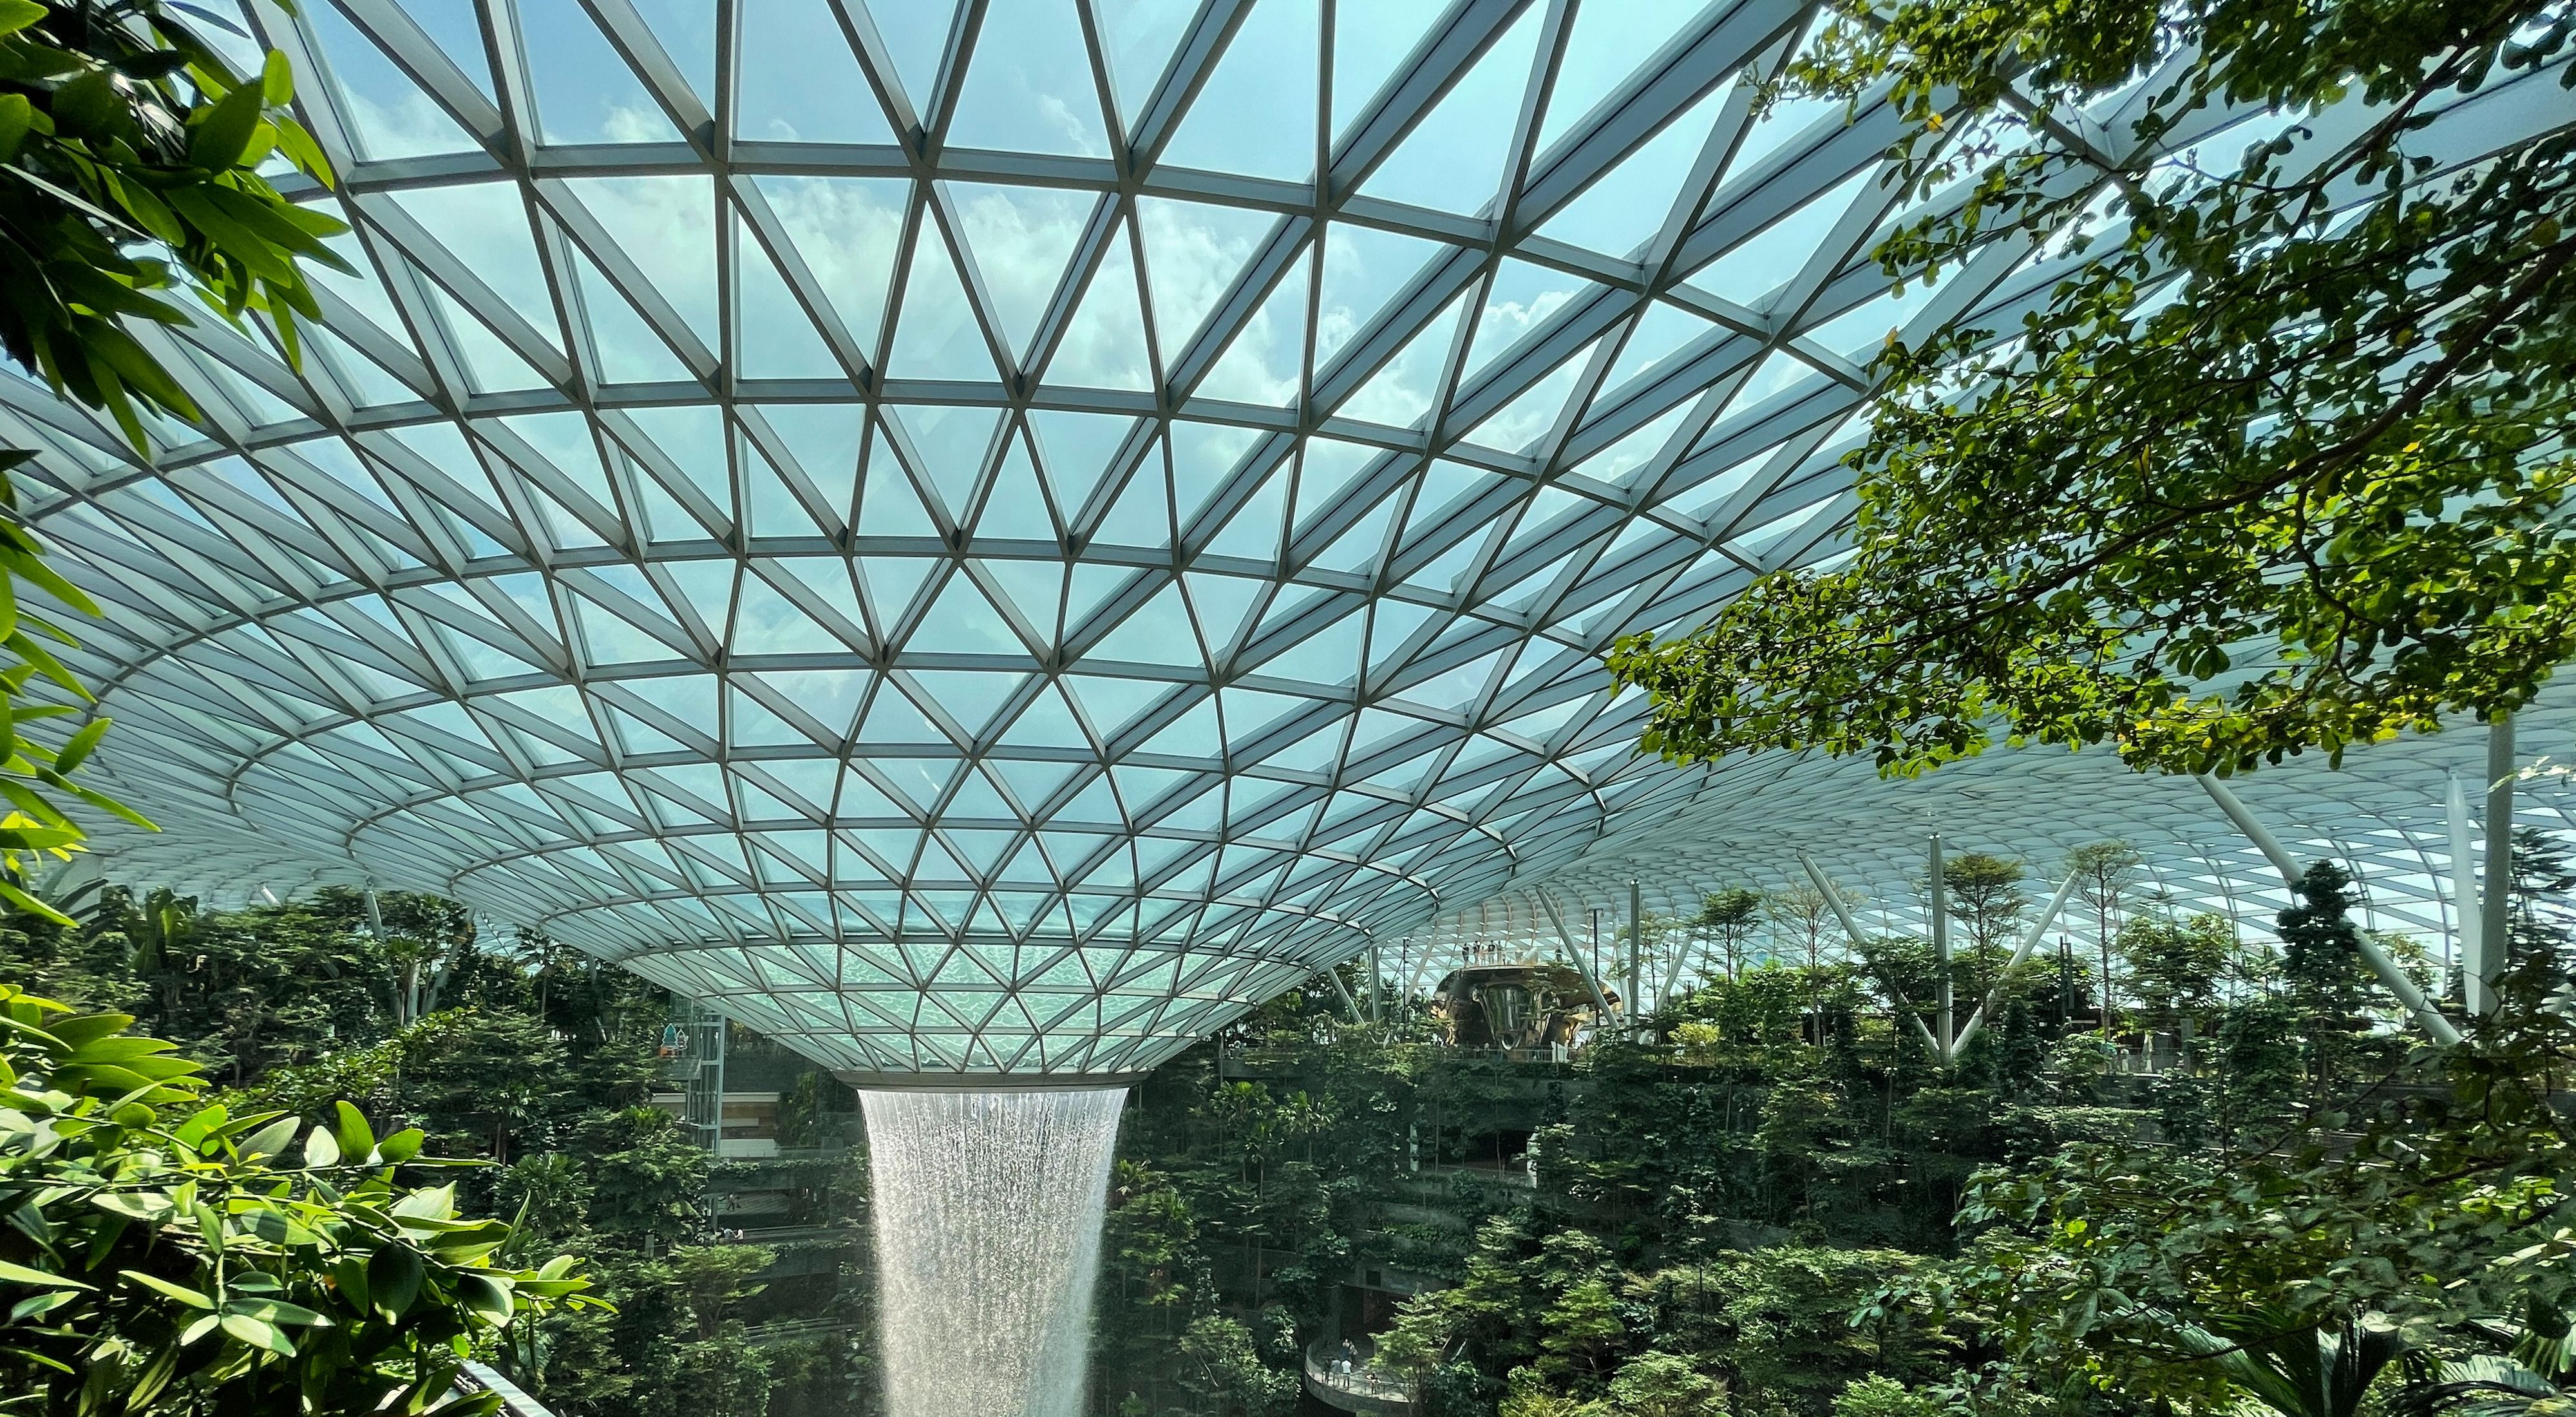 Waterfall inside Singapore's famous Jewel Changi International Airport.